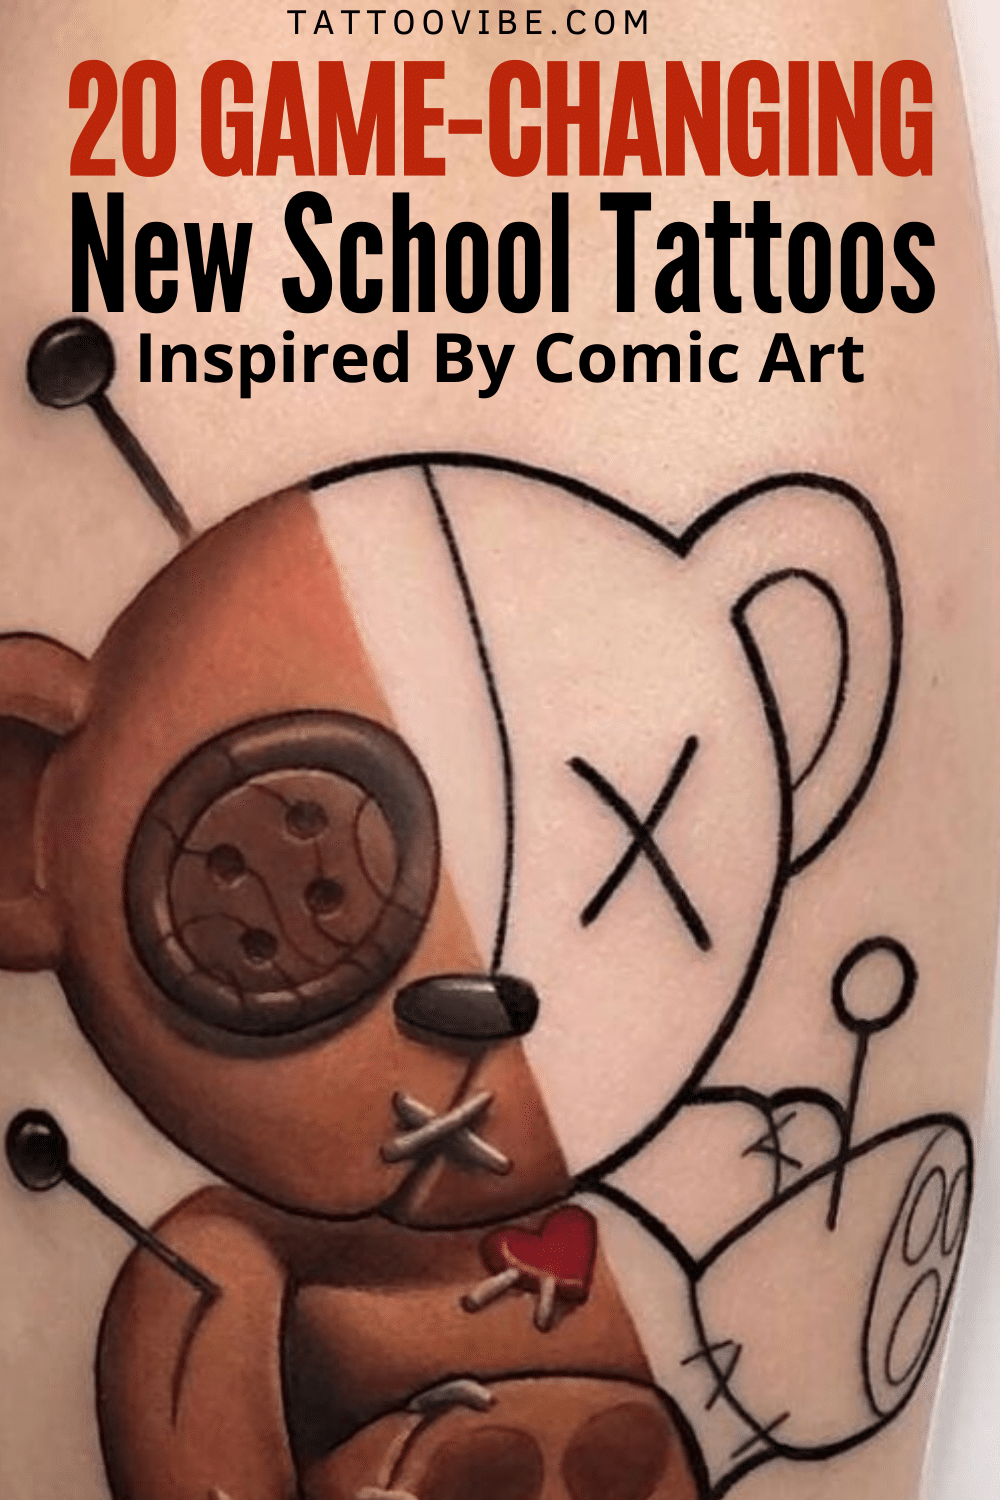 20 tatuajes inspirados en el cómic que cambian el juego de la nueva escuela